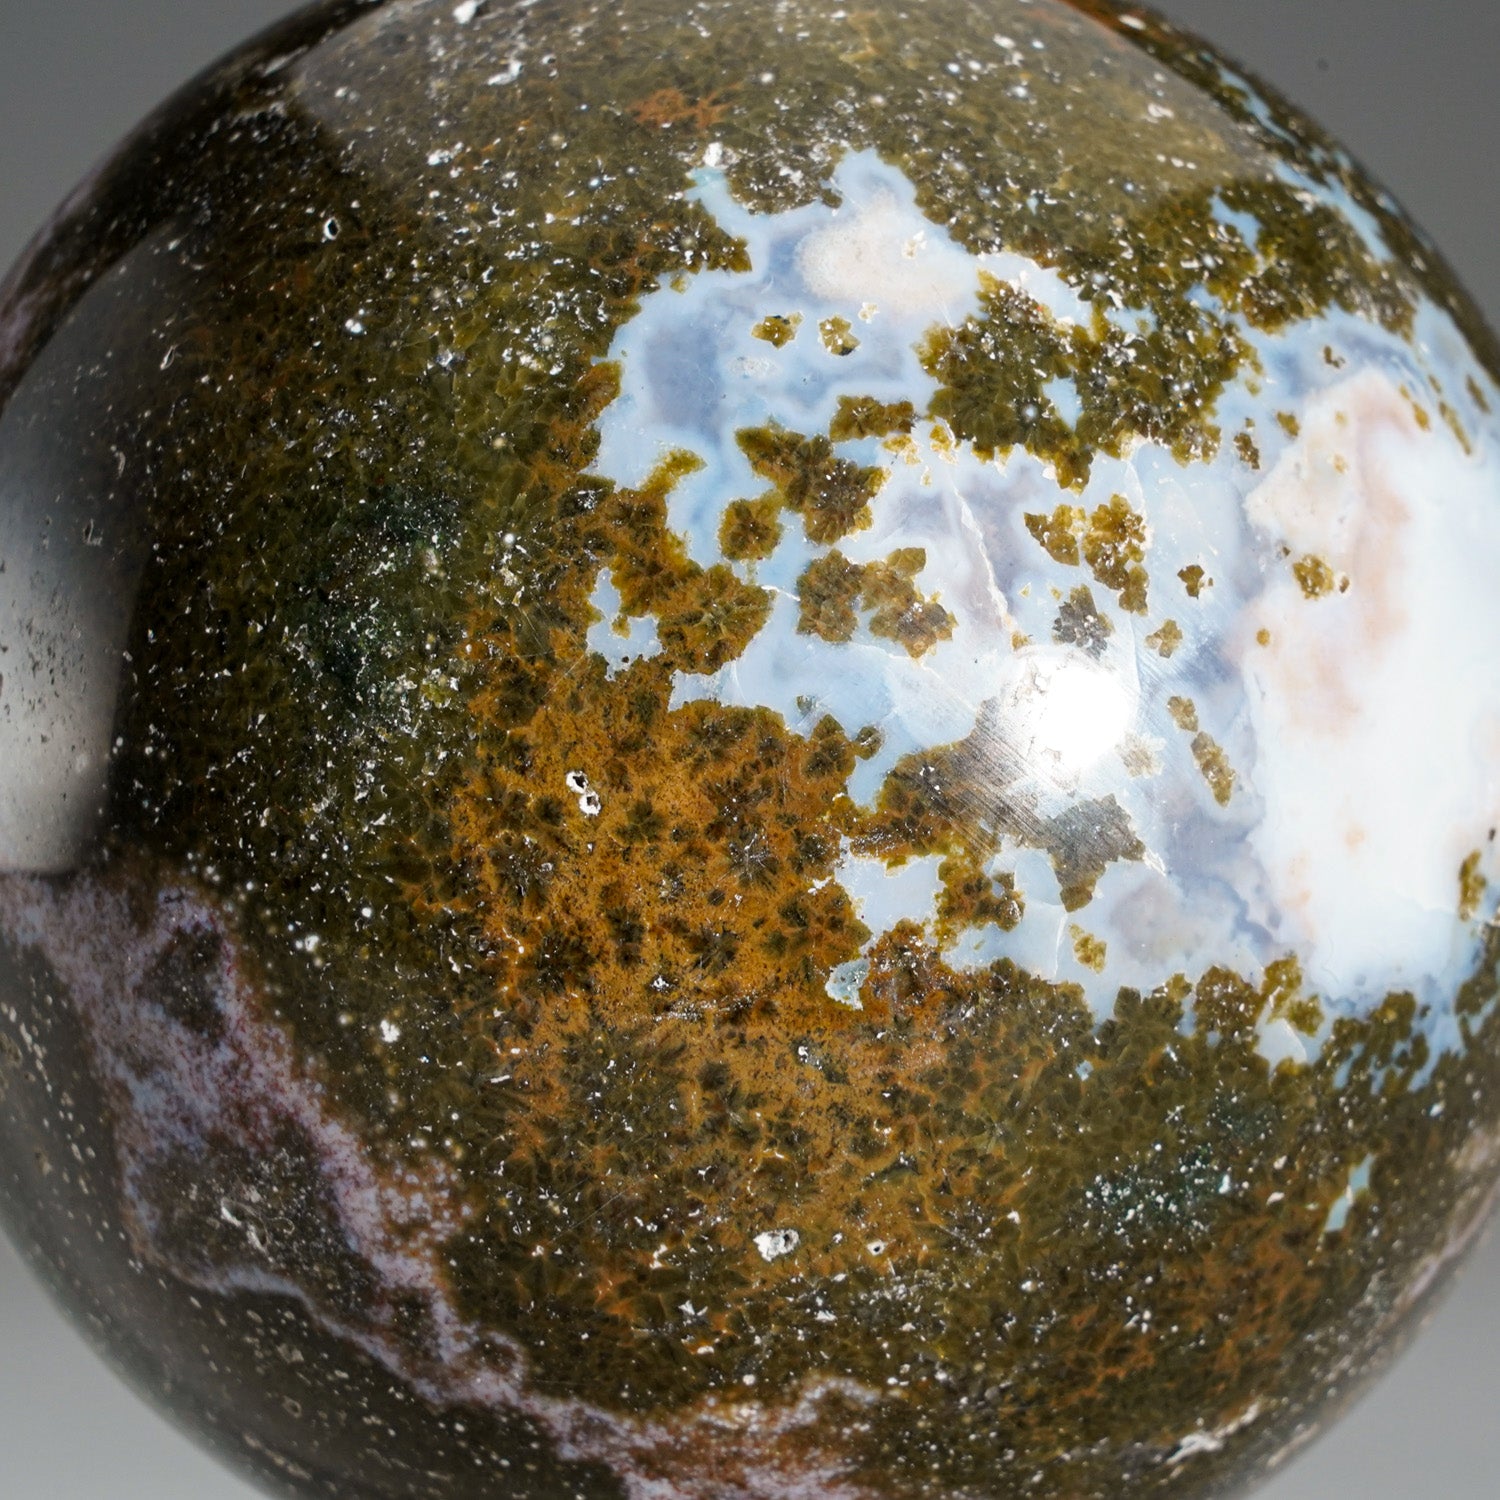 Genuine Polished Ocean Jasper Sphere (2.1 lbs)